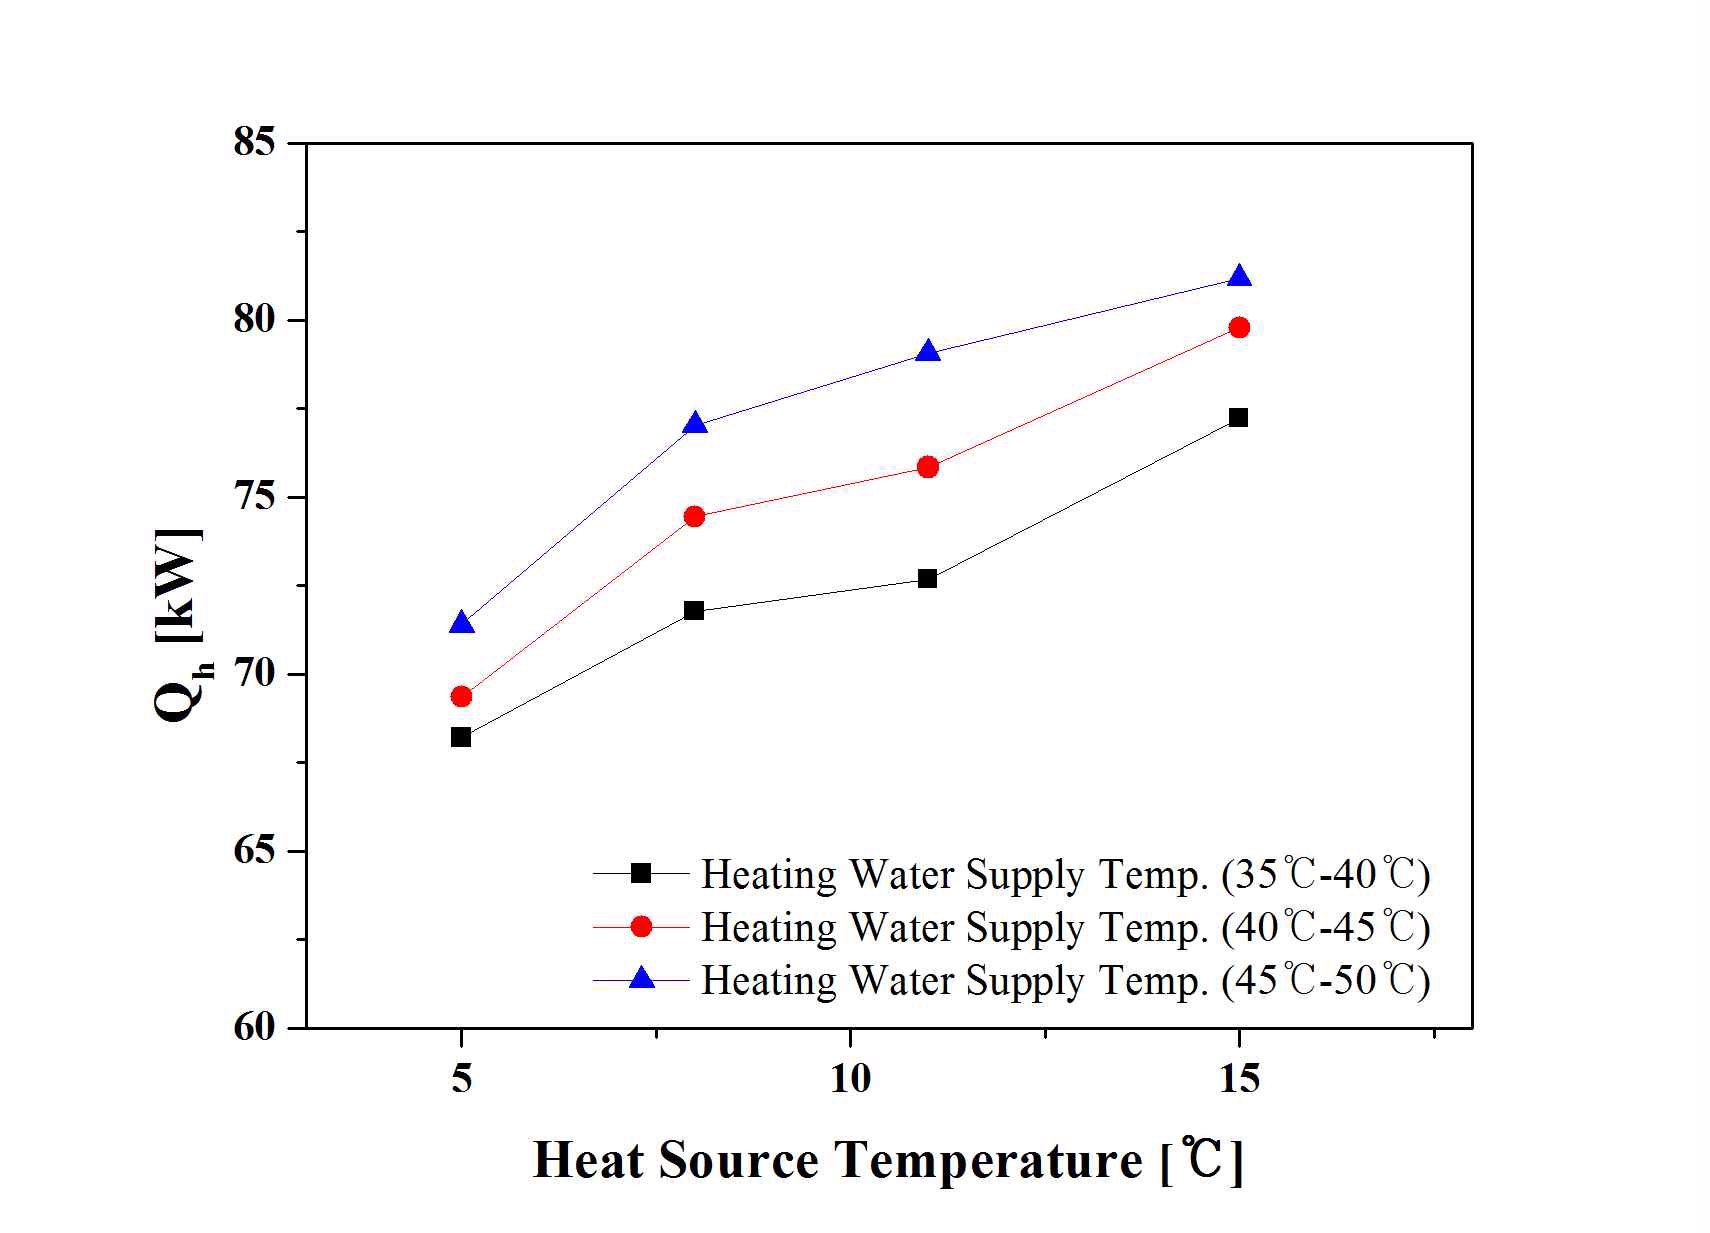 열원온도에 따른 난방생산열량의 변화